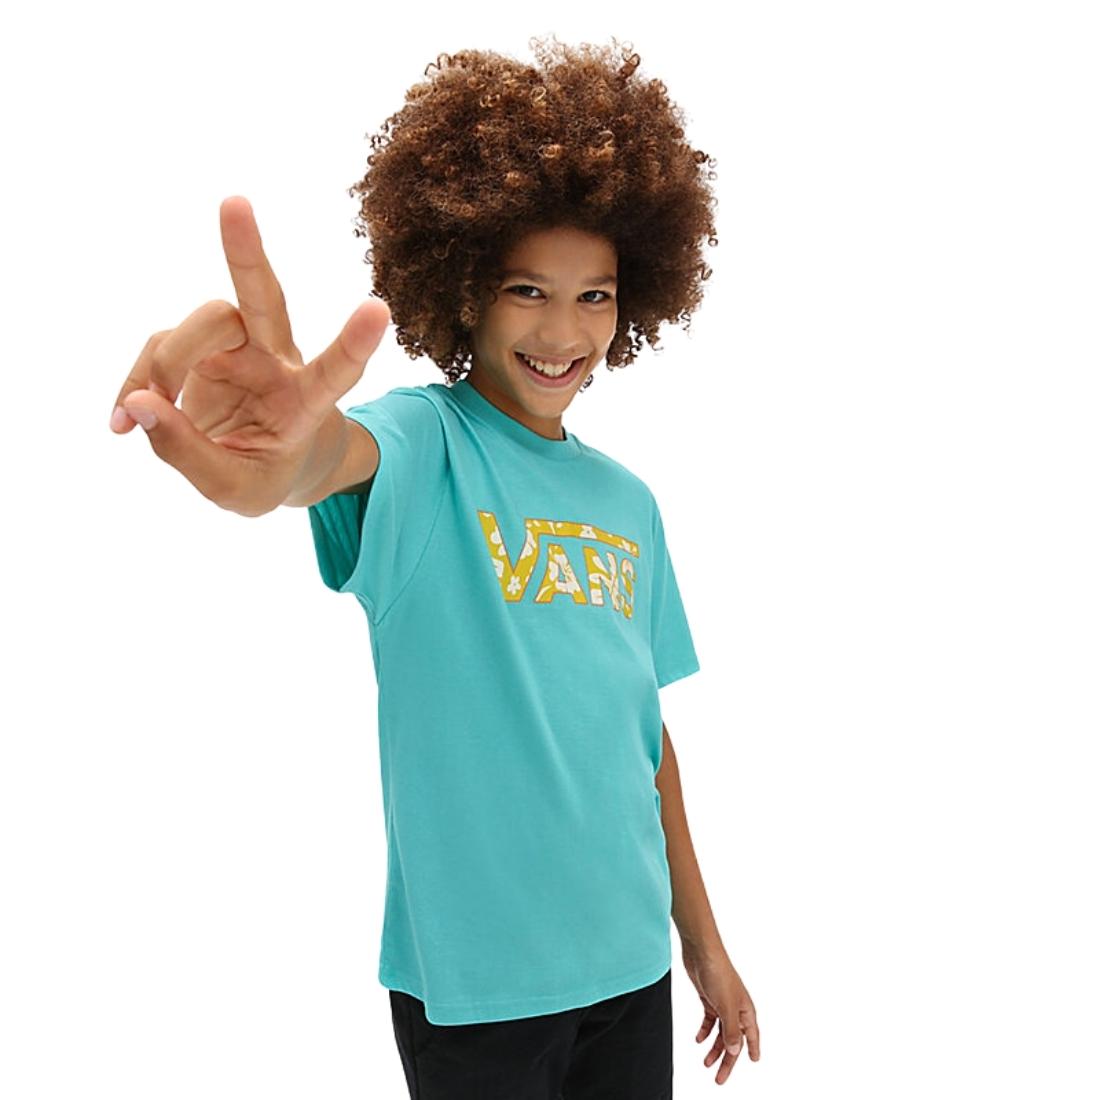 Vans Youth Boys Classic Logo Fill T-Shirt - Waterfall - Boys Skate Brand T-Shirt by Vans